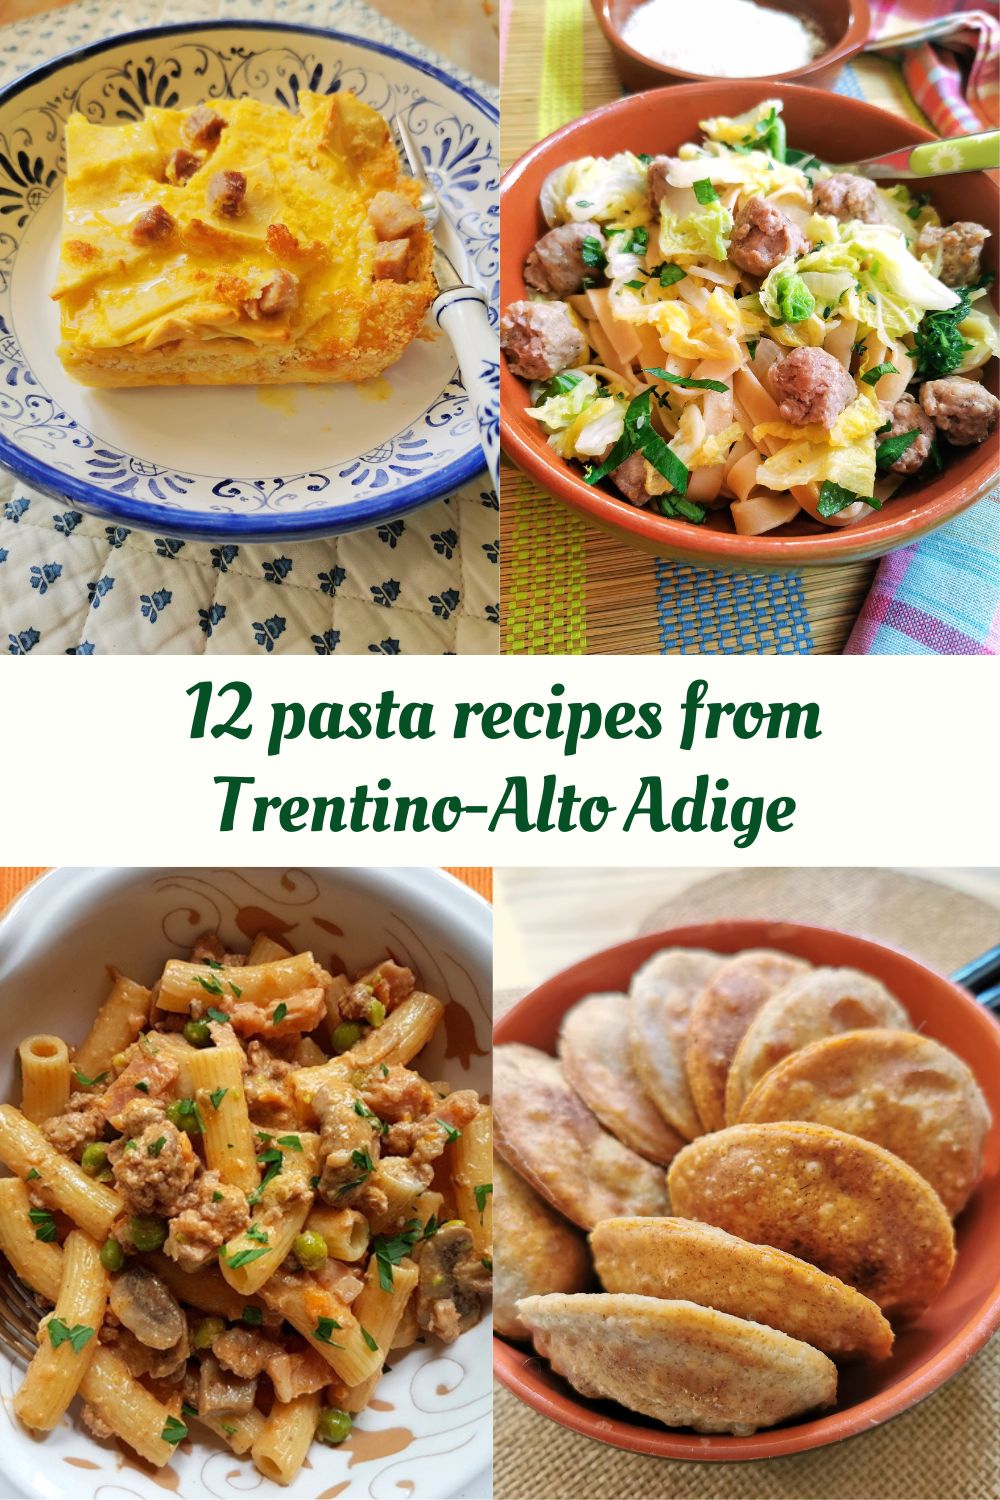 12 pasta recipes from Trentino-Alto Adige.